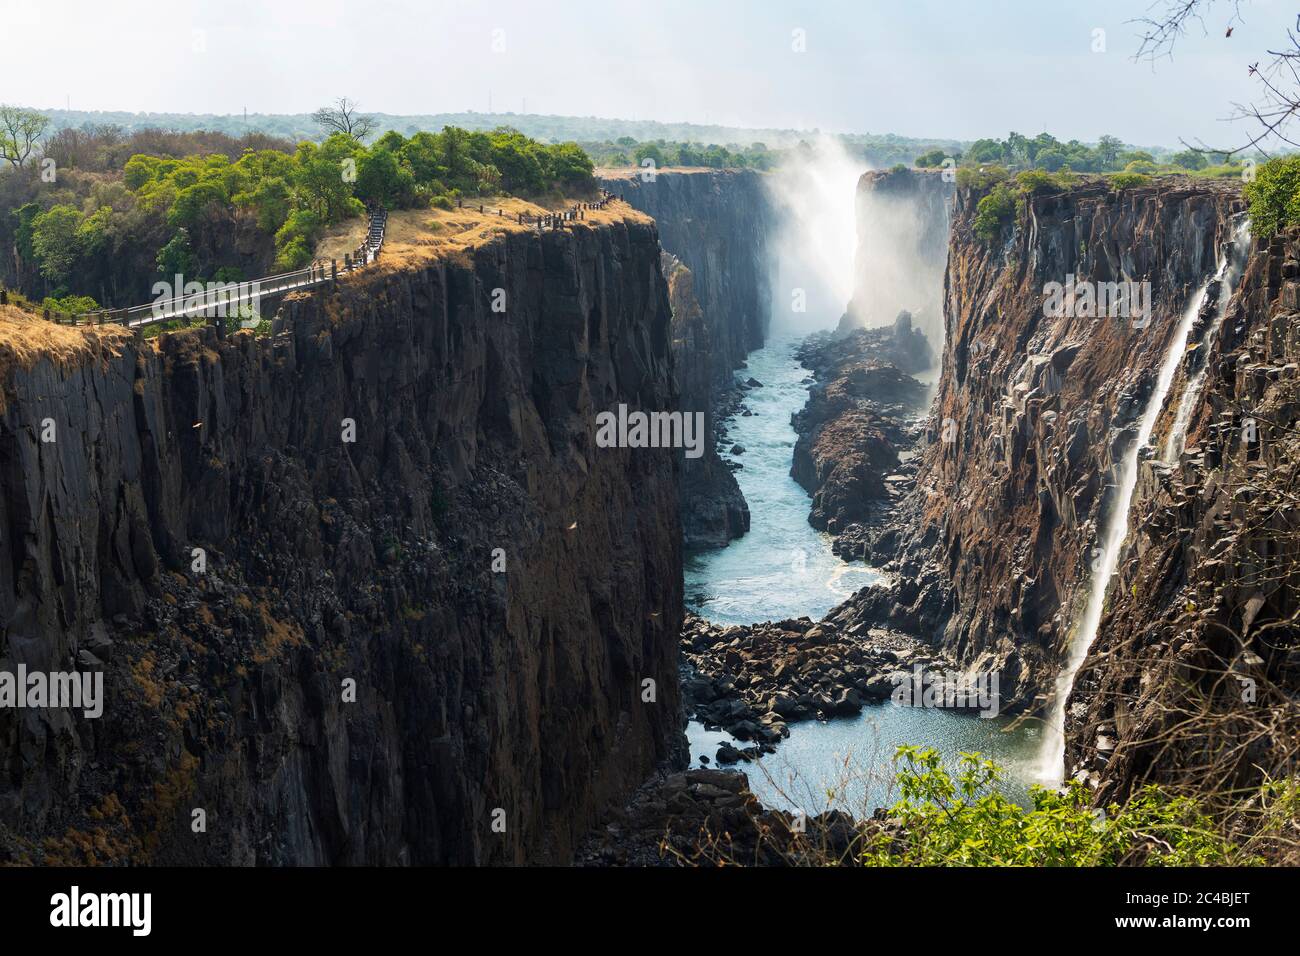 Cascate Victoria vista dal lato Zambiano, gola profonda con lati verticali, cascata con torrenti di acqua bianca. Foto Stock